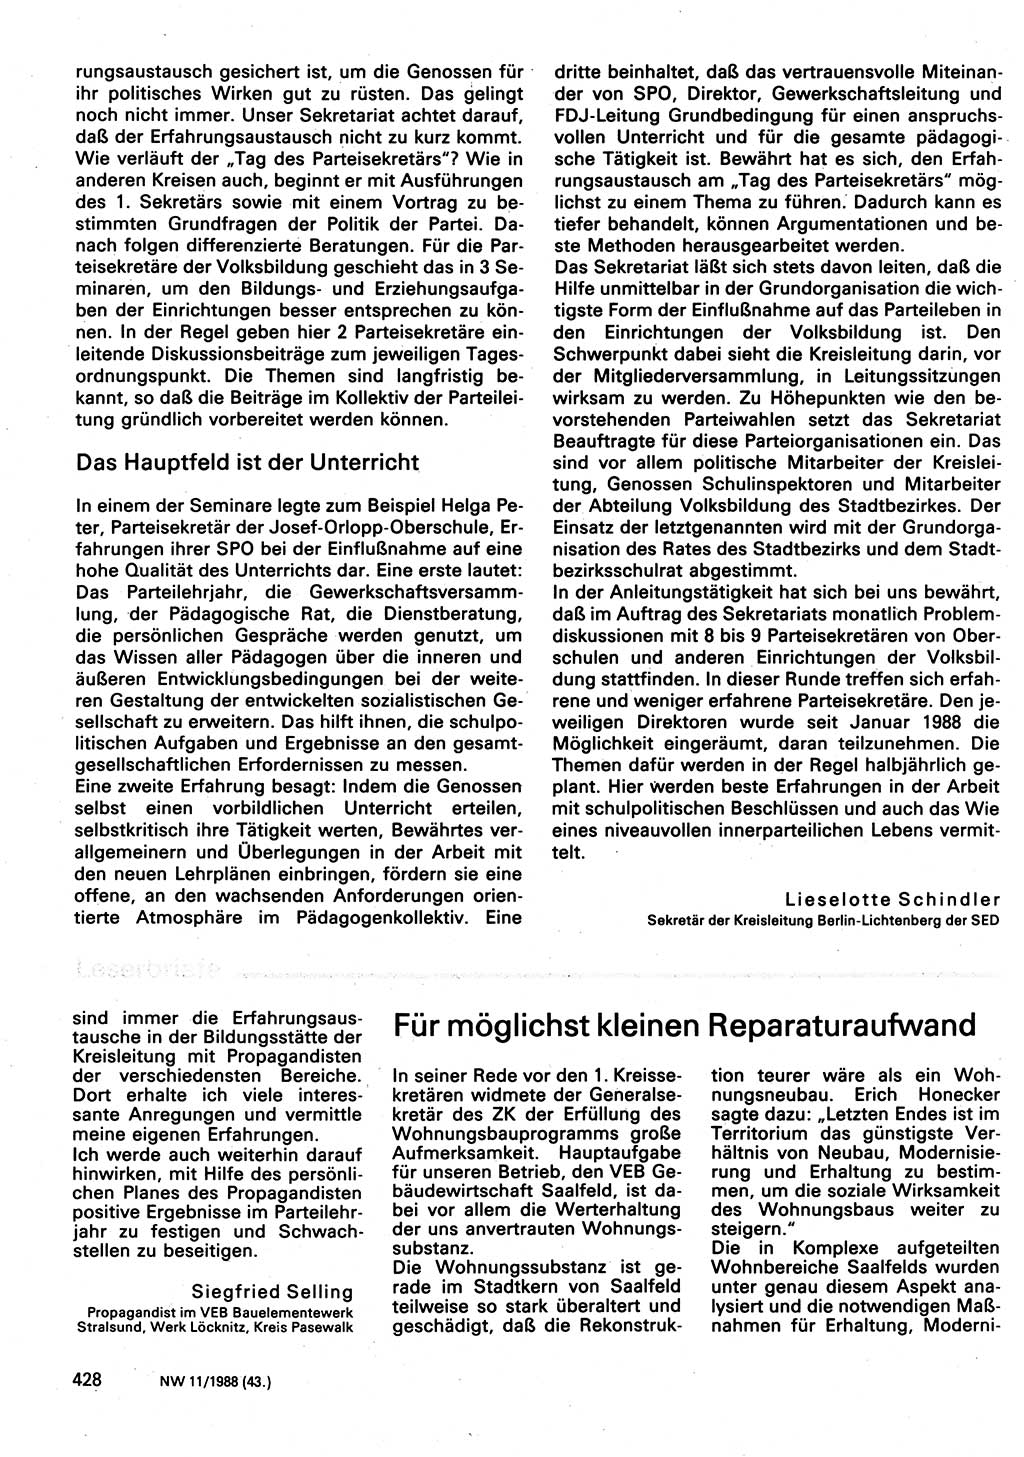 Neuer Weg (NW), Organ des Zentralkomitees (ZK) der SED (Sozialistische Einheitspartei Deutschlands) für Fragen des Parteilebens, 43. Jahrgang [Deutsche Demokratische Republik (DDR)] 1988, Seite 428 (NW ZK SED DDR 1988, S. 428)